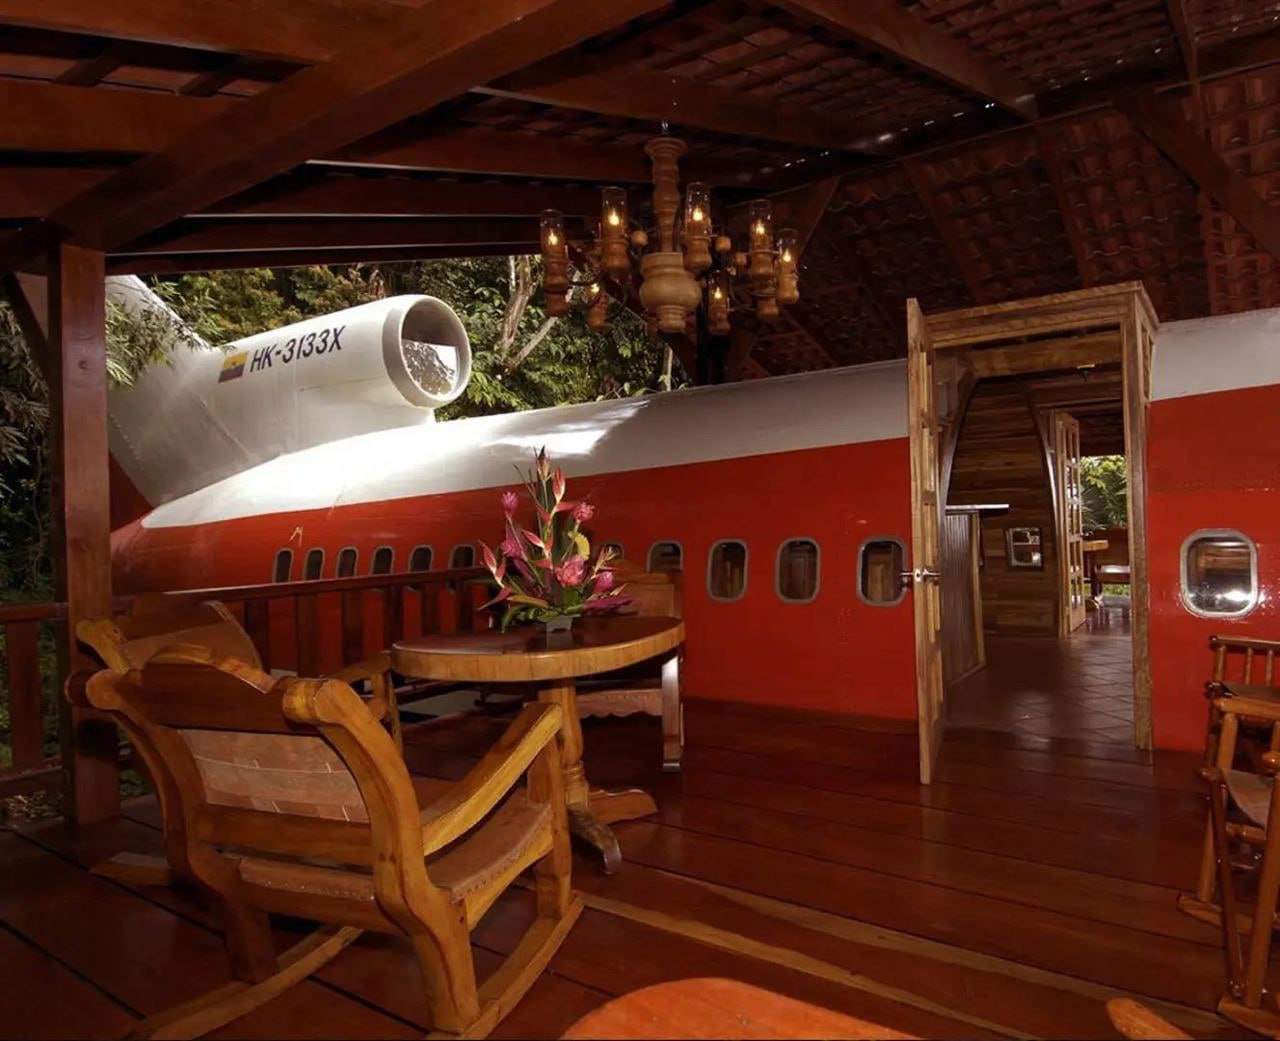 Заброшенный Boeing 727 стал домиком в джунглях в Коста-Рике (3 фото)